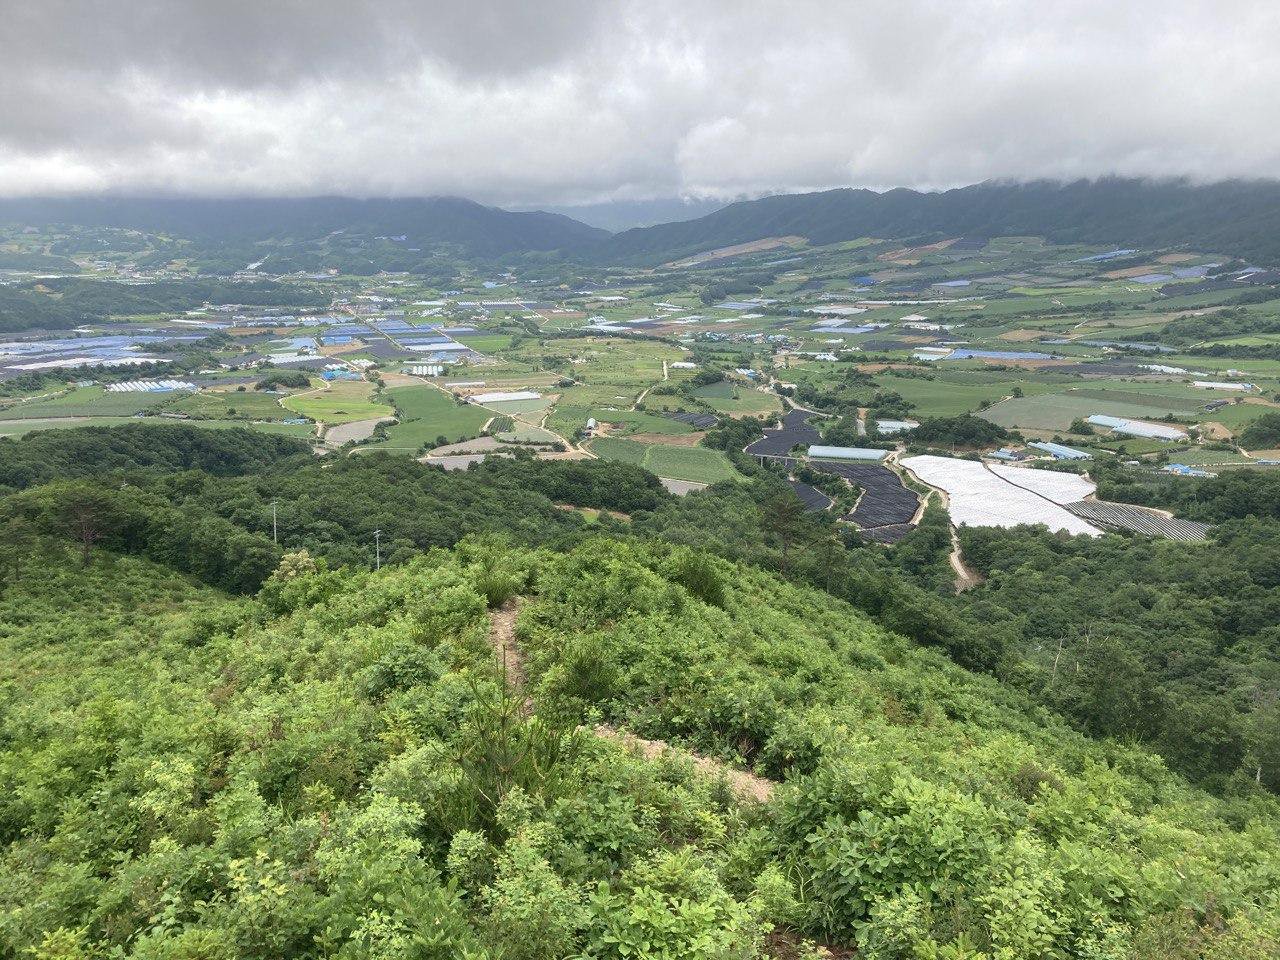 Yanggu Valley